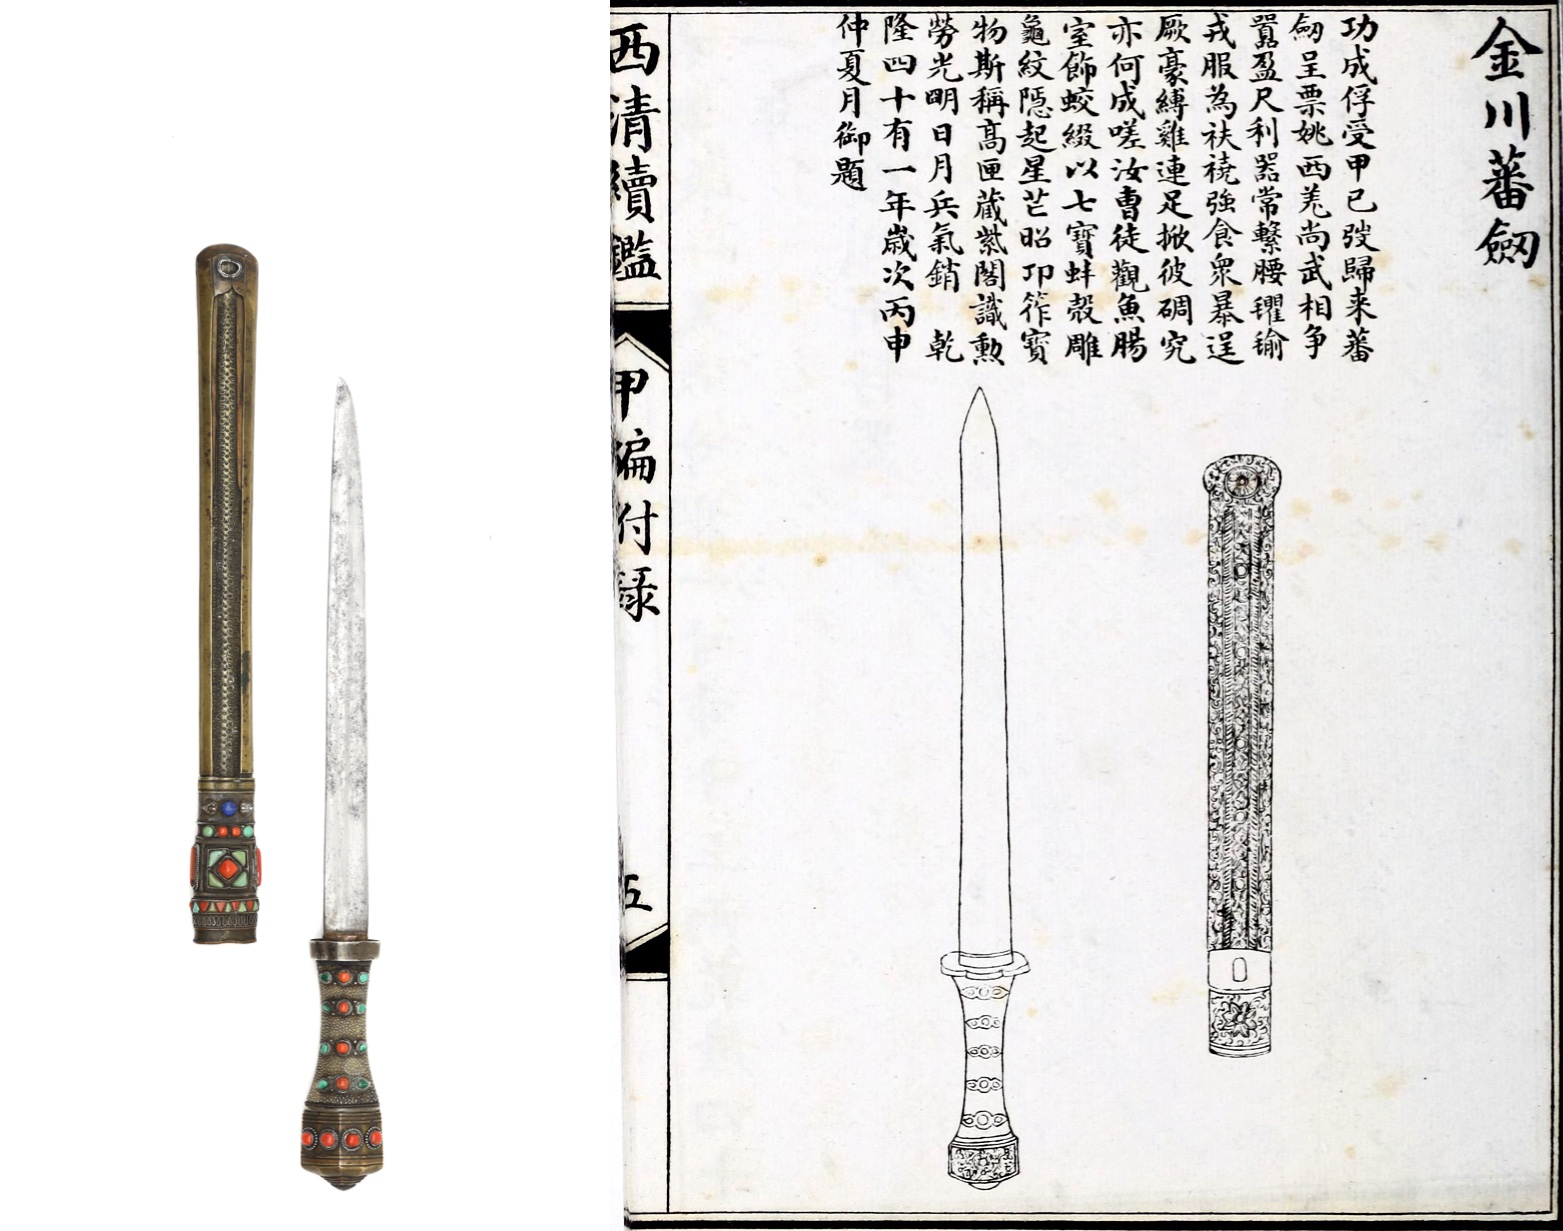 Comparison of Jinchuan daggers